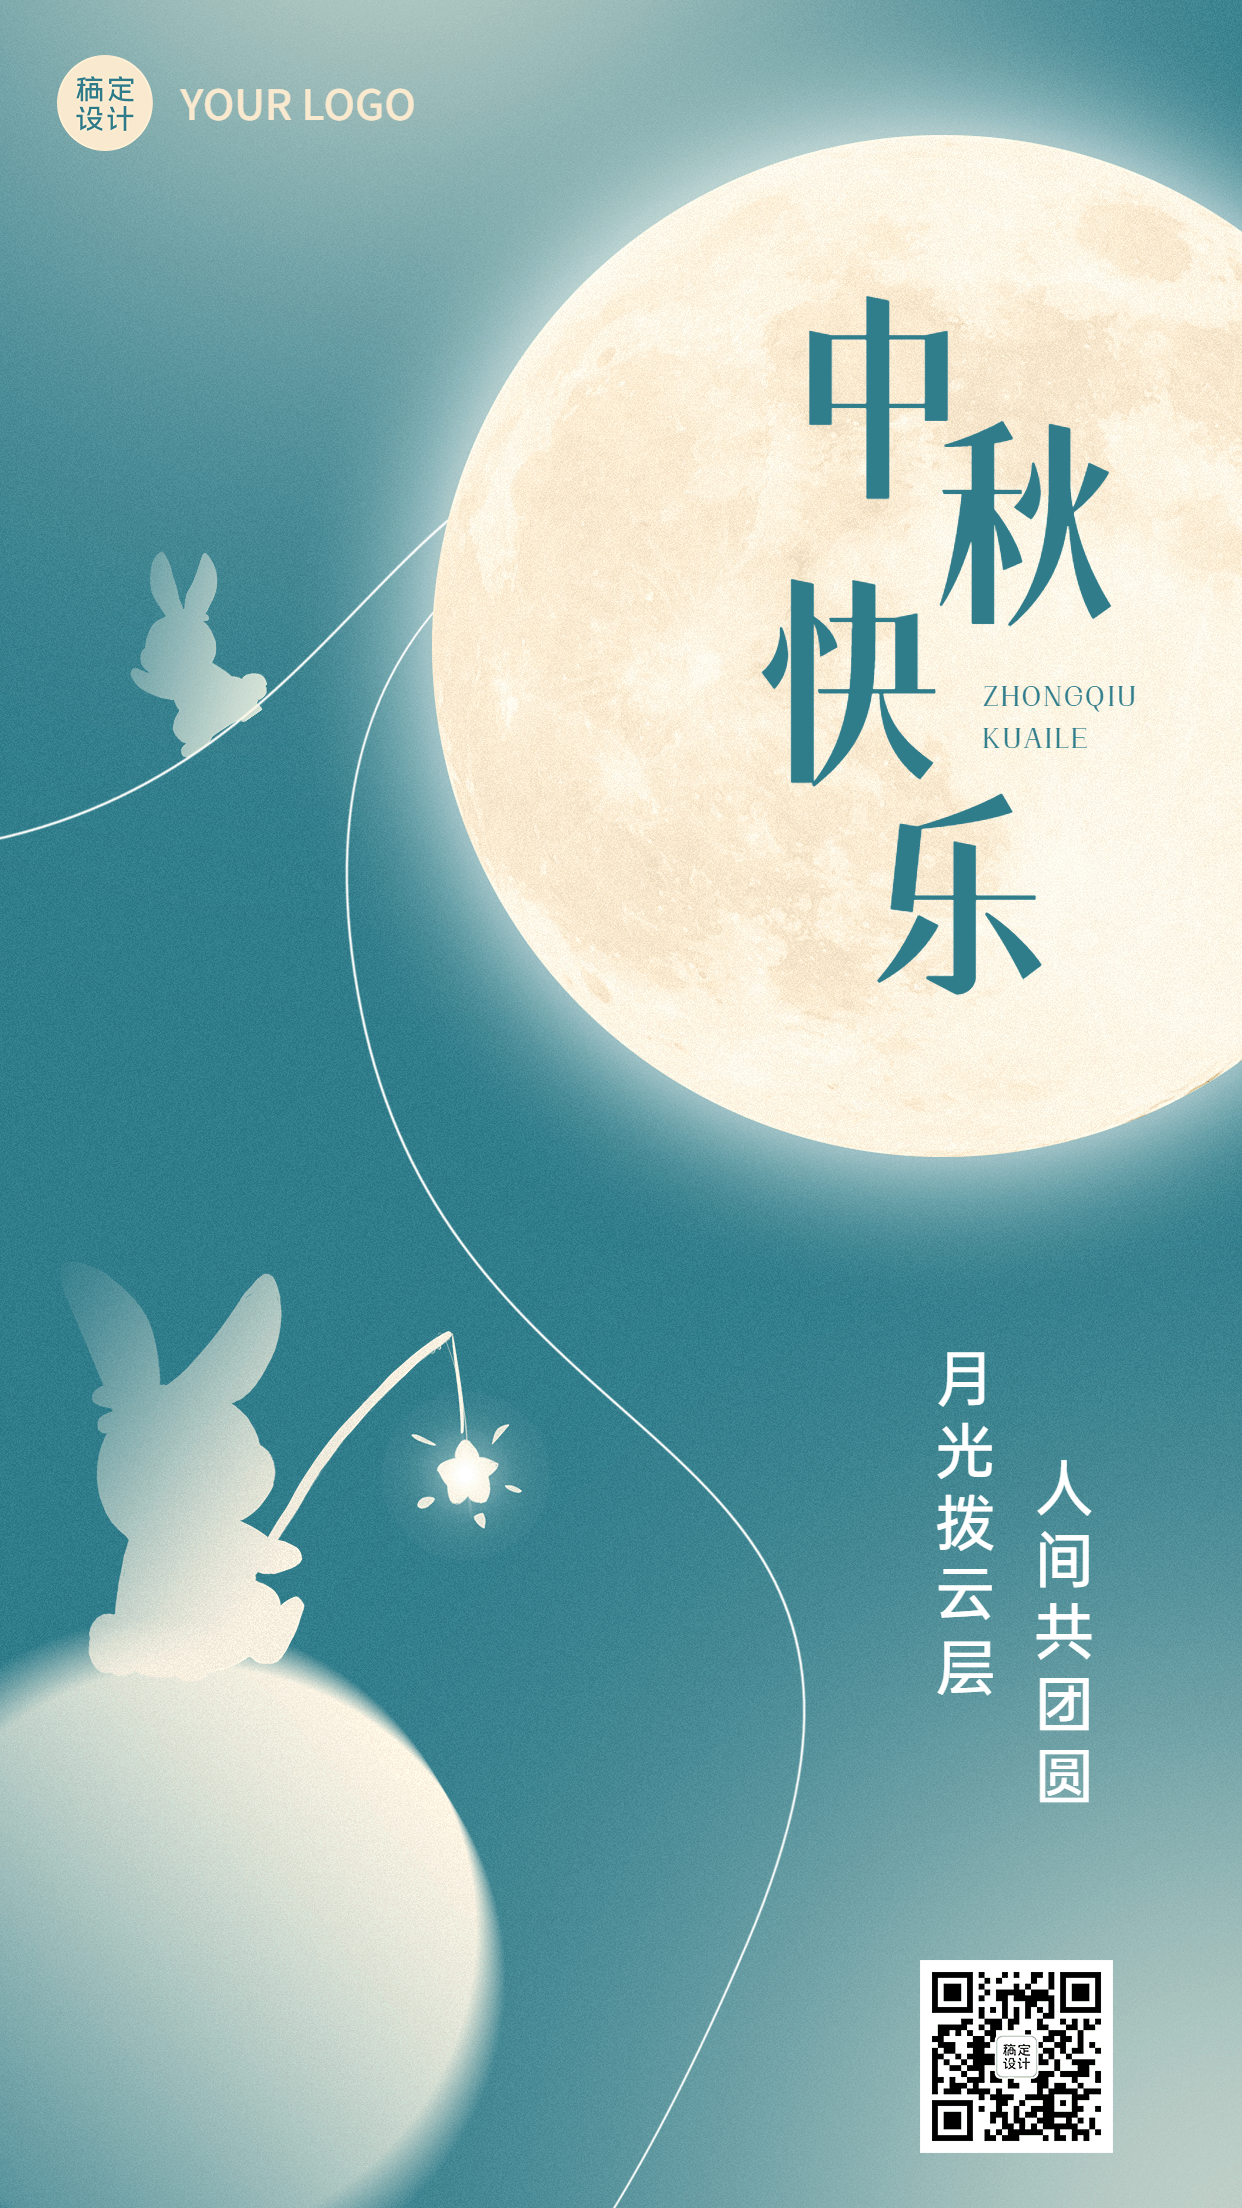 中秋节节日祝福手机海报